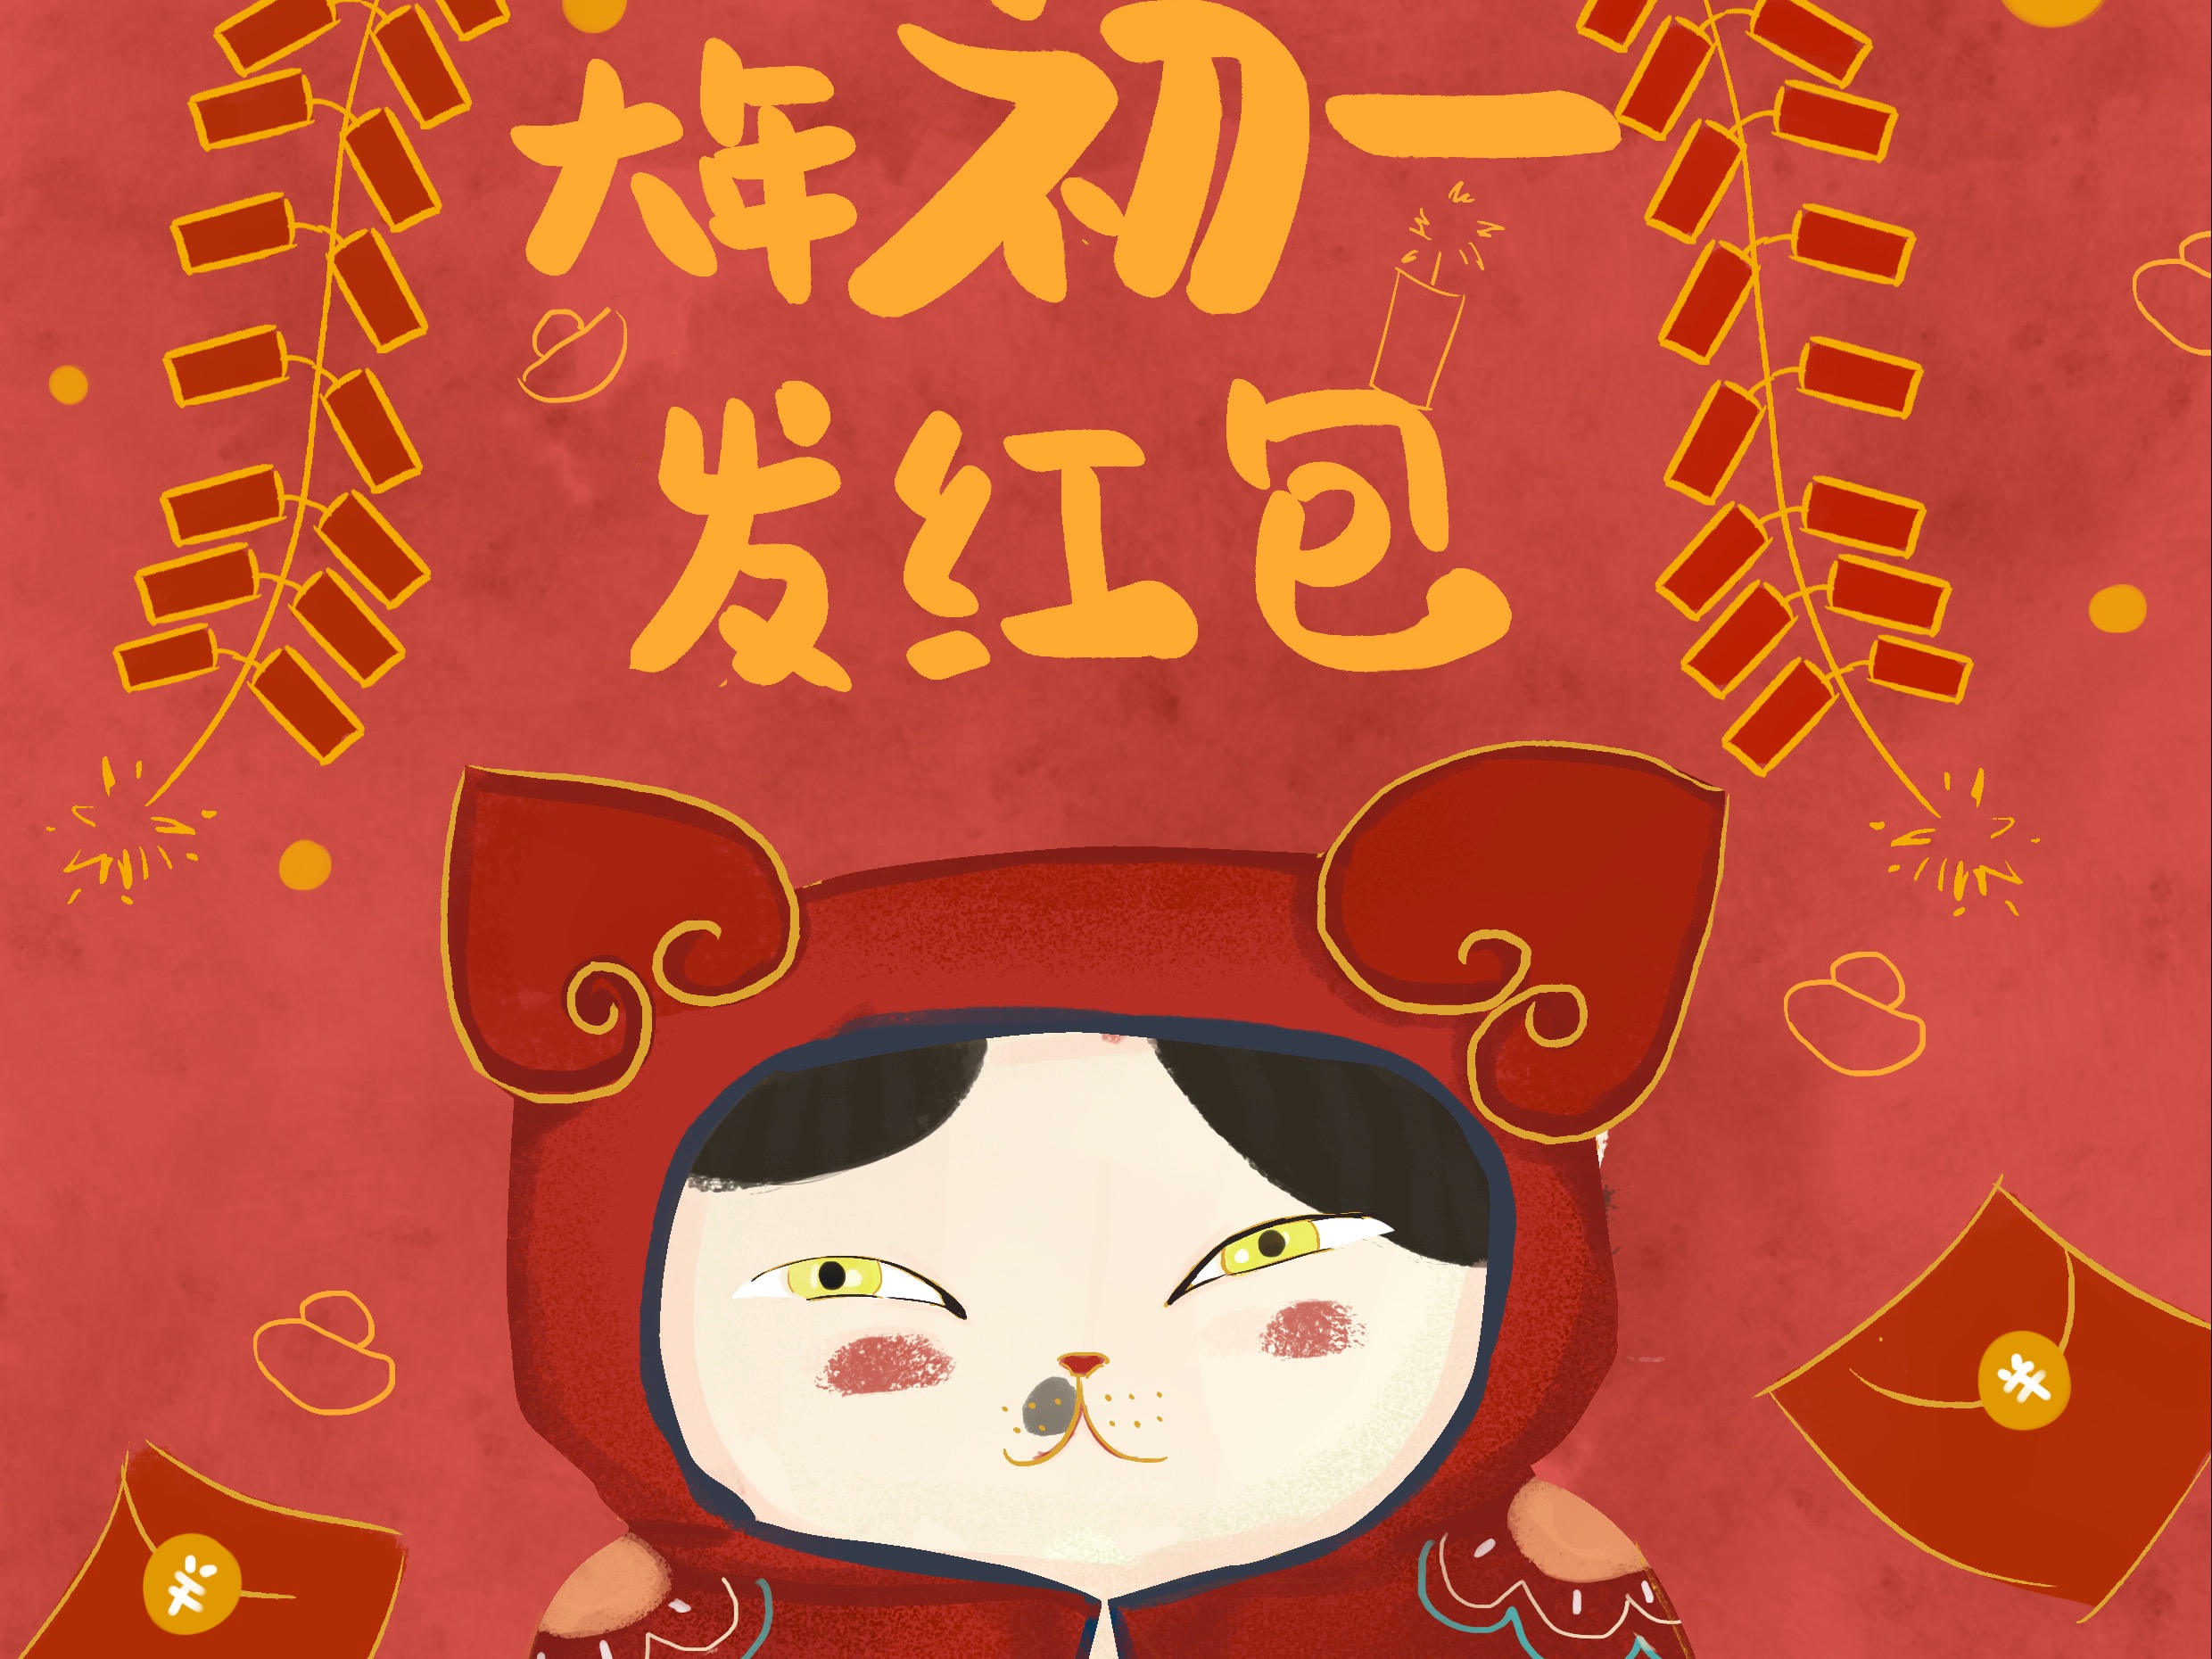 猫喵给大家拜年了！新年快乐 - 插画 - 摸鱼网 - Σ(っ °Д °;)っ 让世界更萌~ mooyuu.com